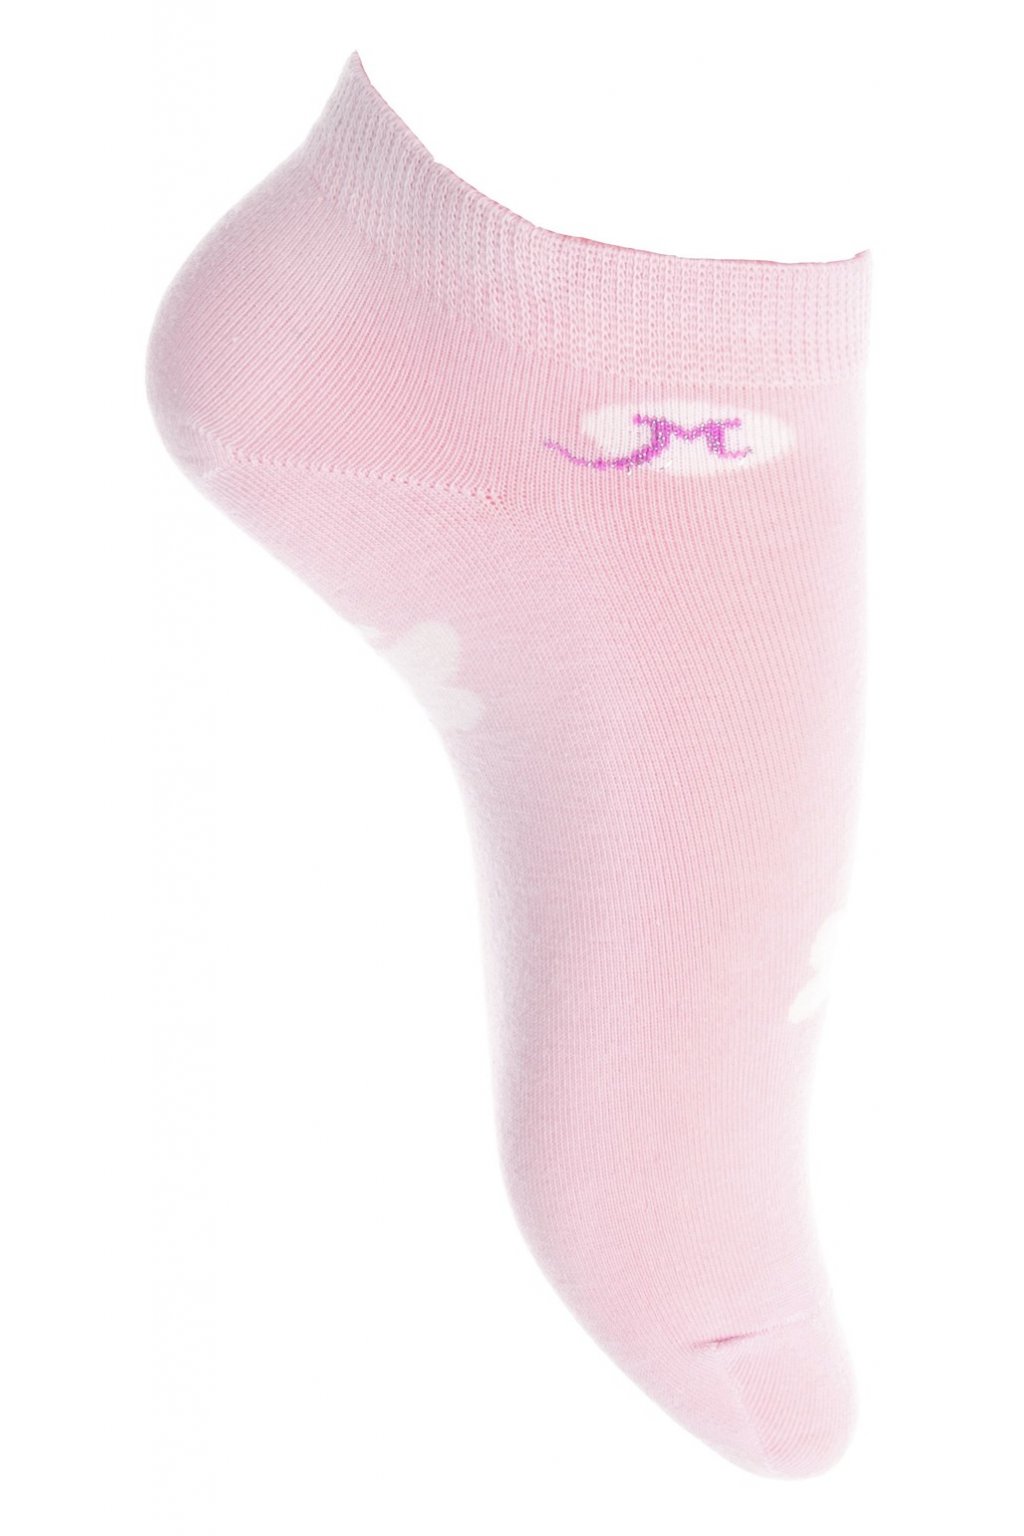 ND5918PU damske ponozky 1